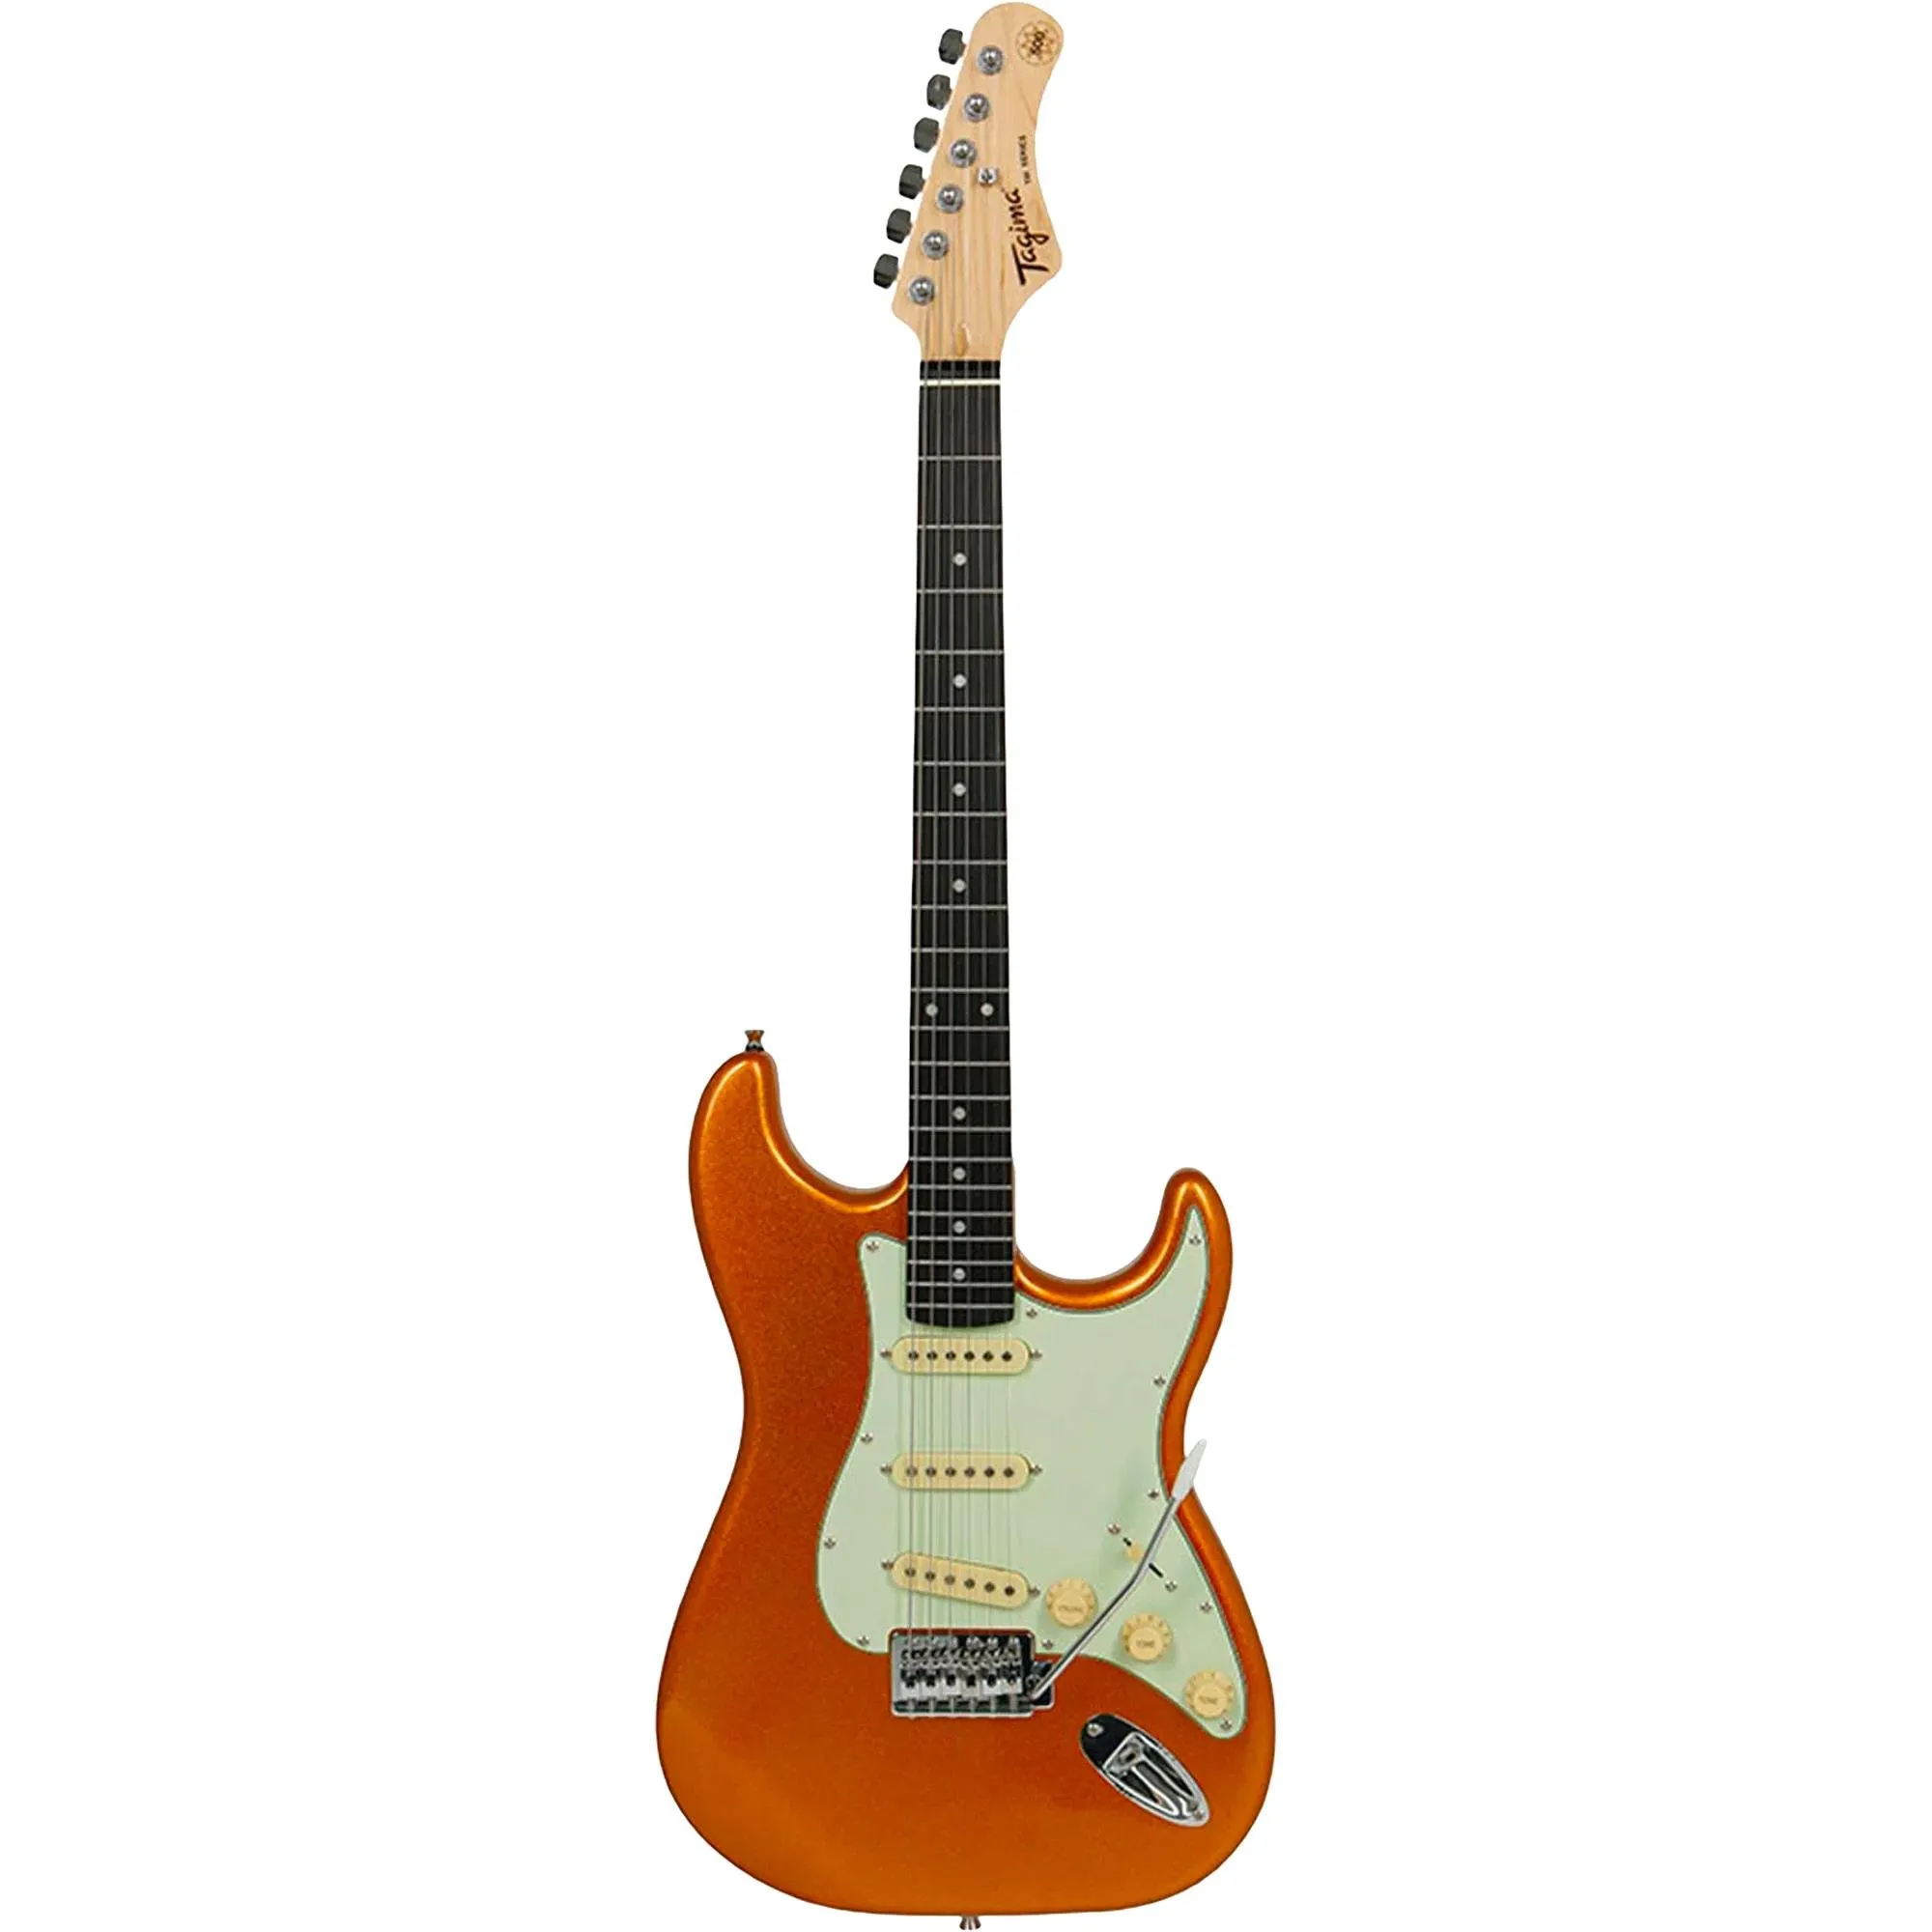 Guitarra TAGIMA TG500MGY Metalic Gold Yellow por 999,99 à vista no boleto/pix ou parcele em até 10x sem juros. Compre na loja Mundomax!